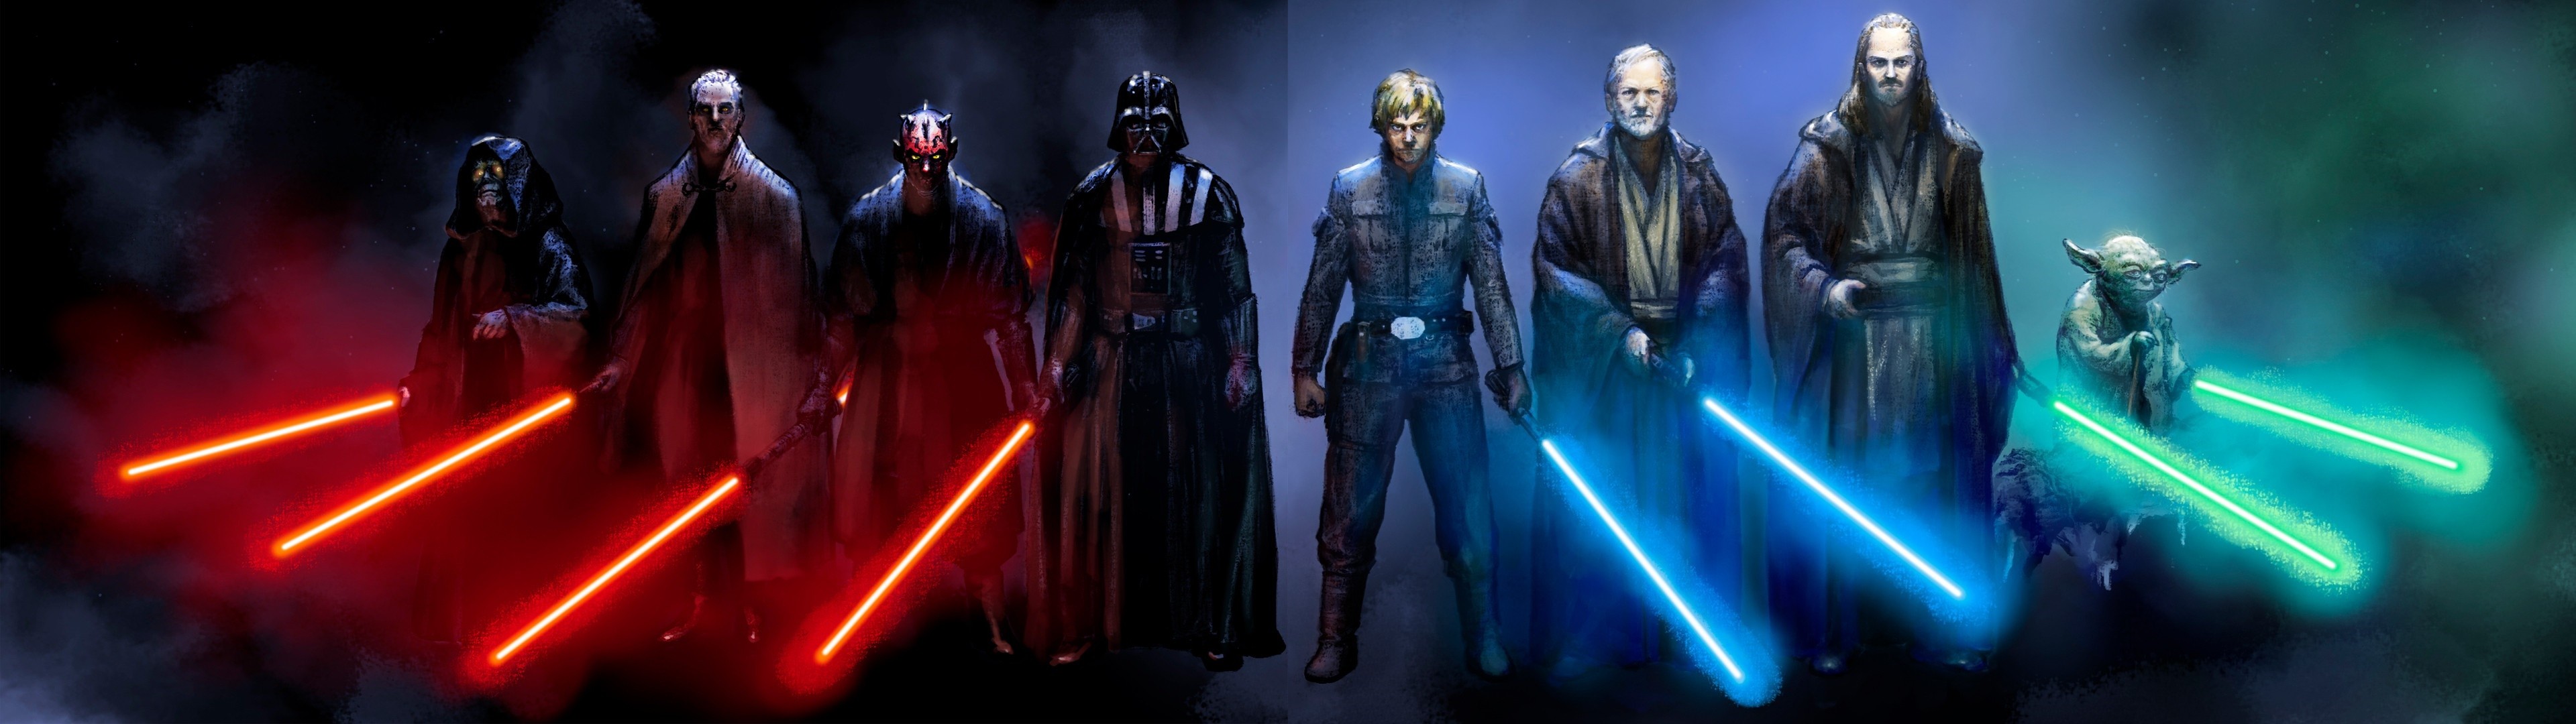 Sci Fi – Star Wars Darth Vader Darth Maul Yoda Obi Wan Kenobi Sith